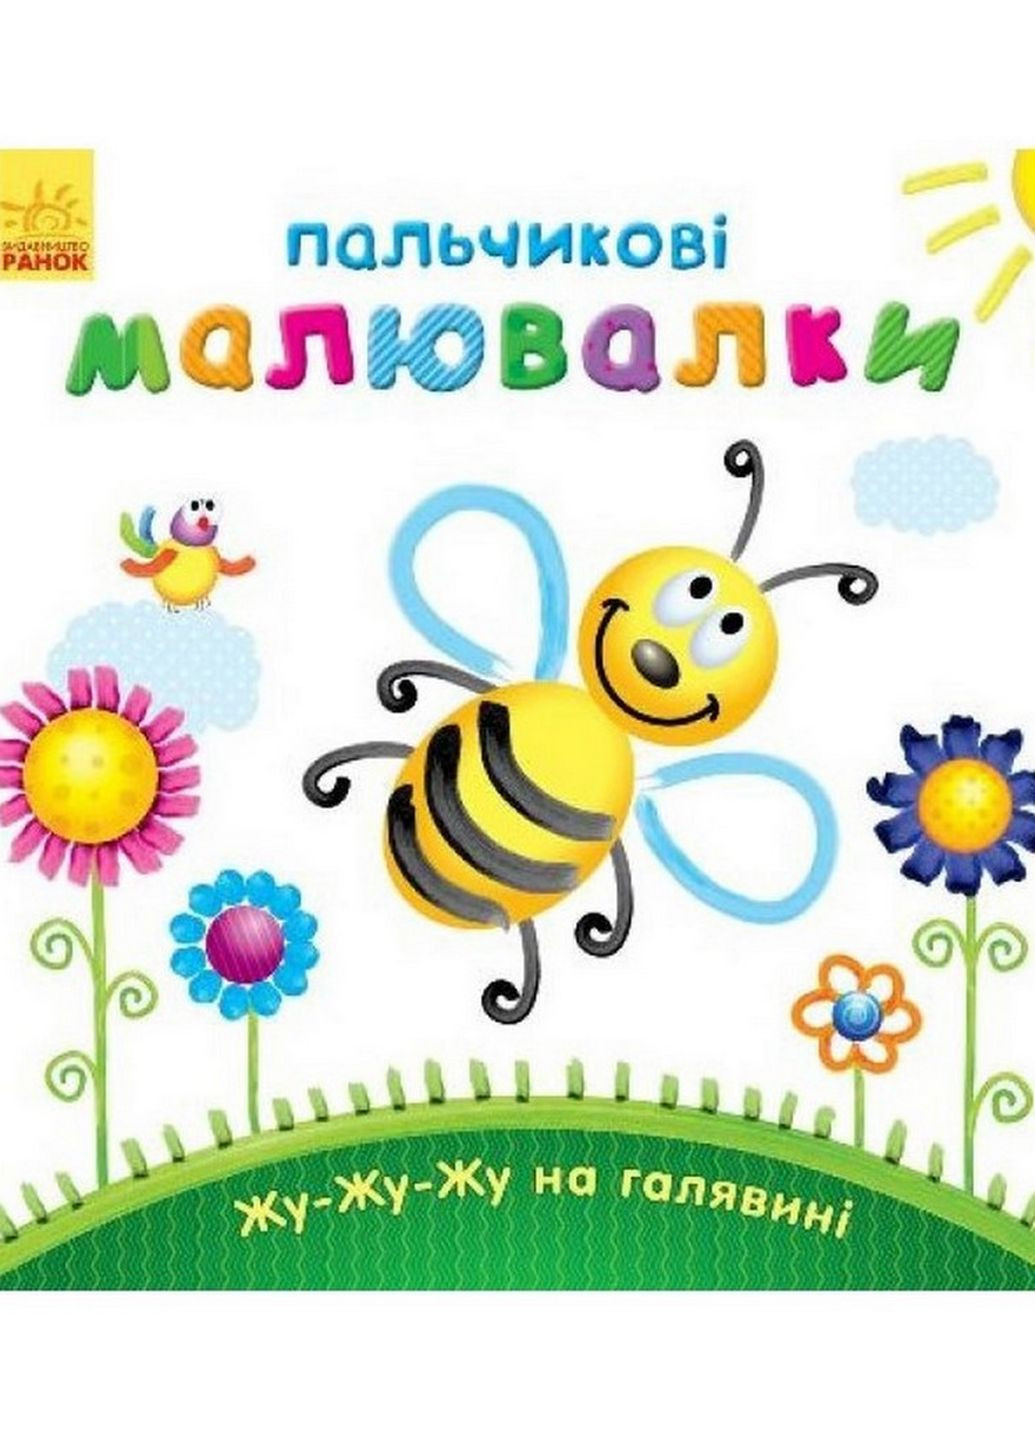 Пальчиковые рисовалки: Жу-жу-жу на полянке Ранок 509025 на украинском языке Ranok Creative (261485891)